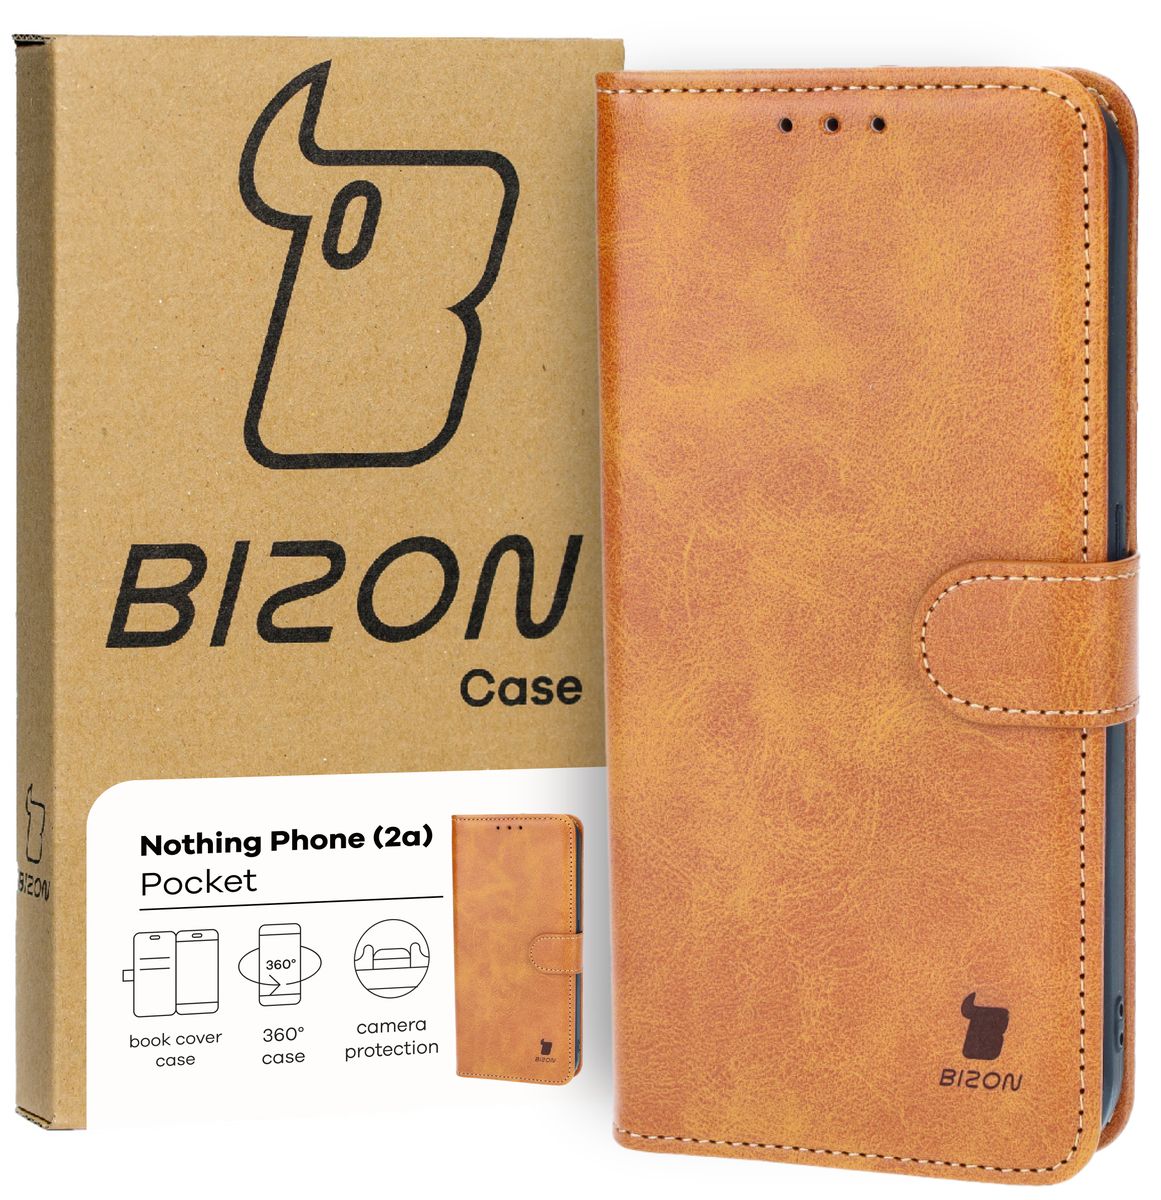 Schutzhülle für Nothing Phone (2a), Bizon Case Pocket, Braun